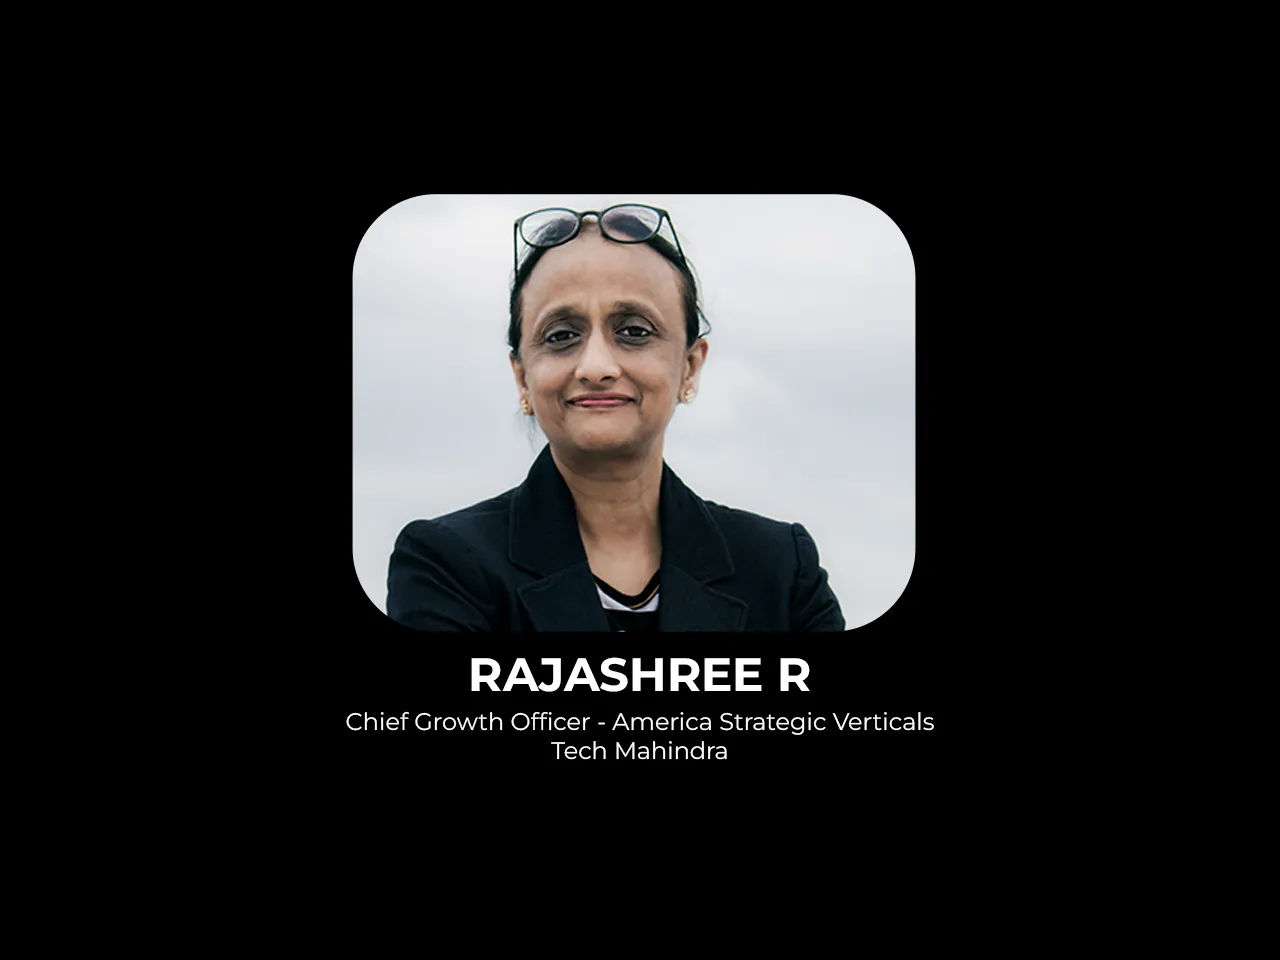 Rajashree R